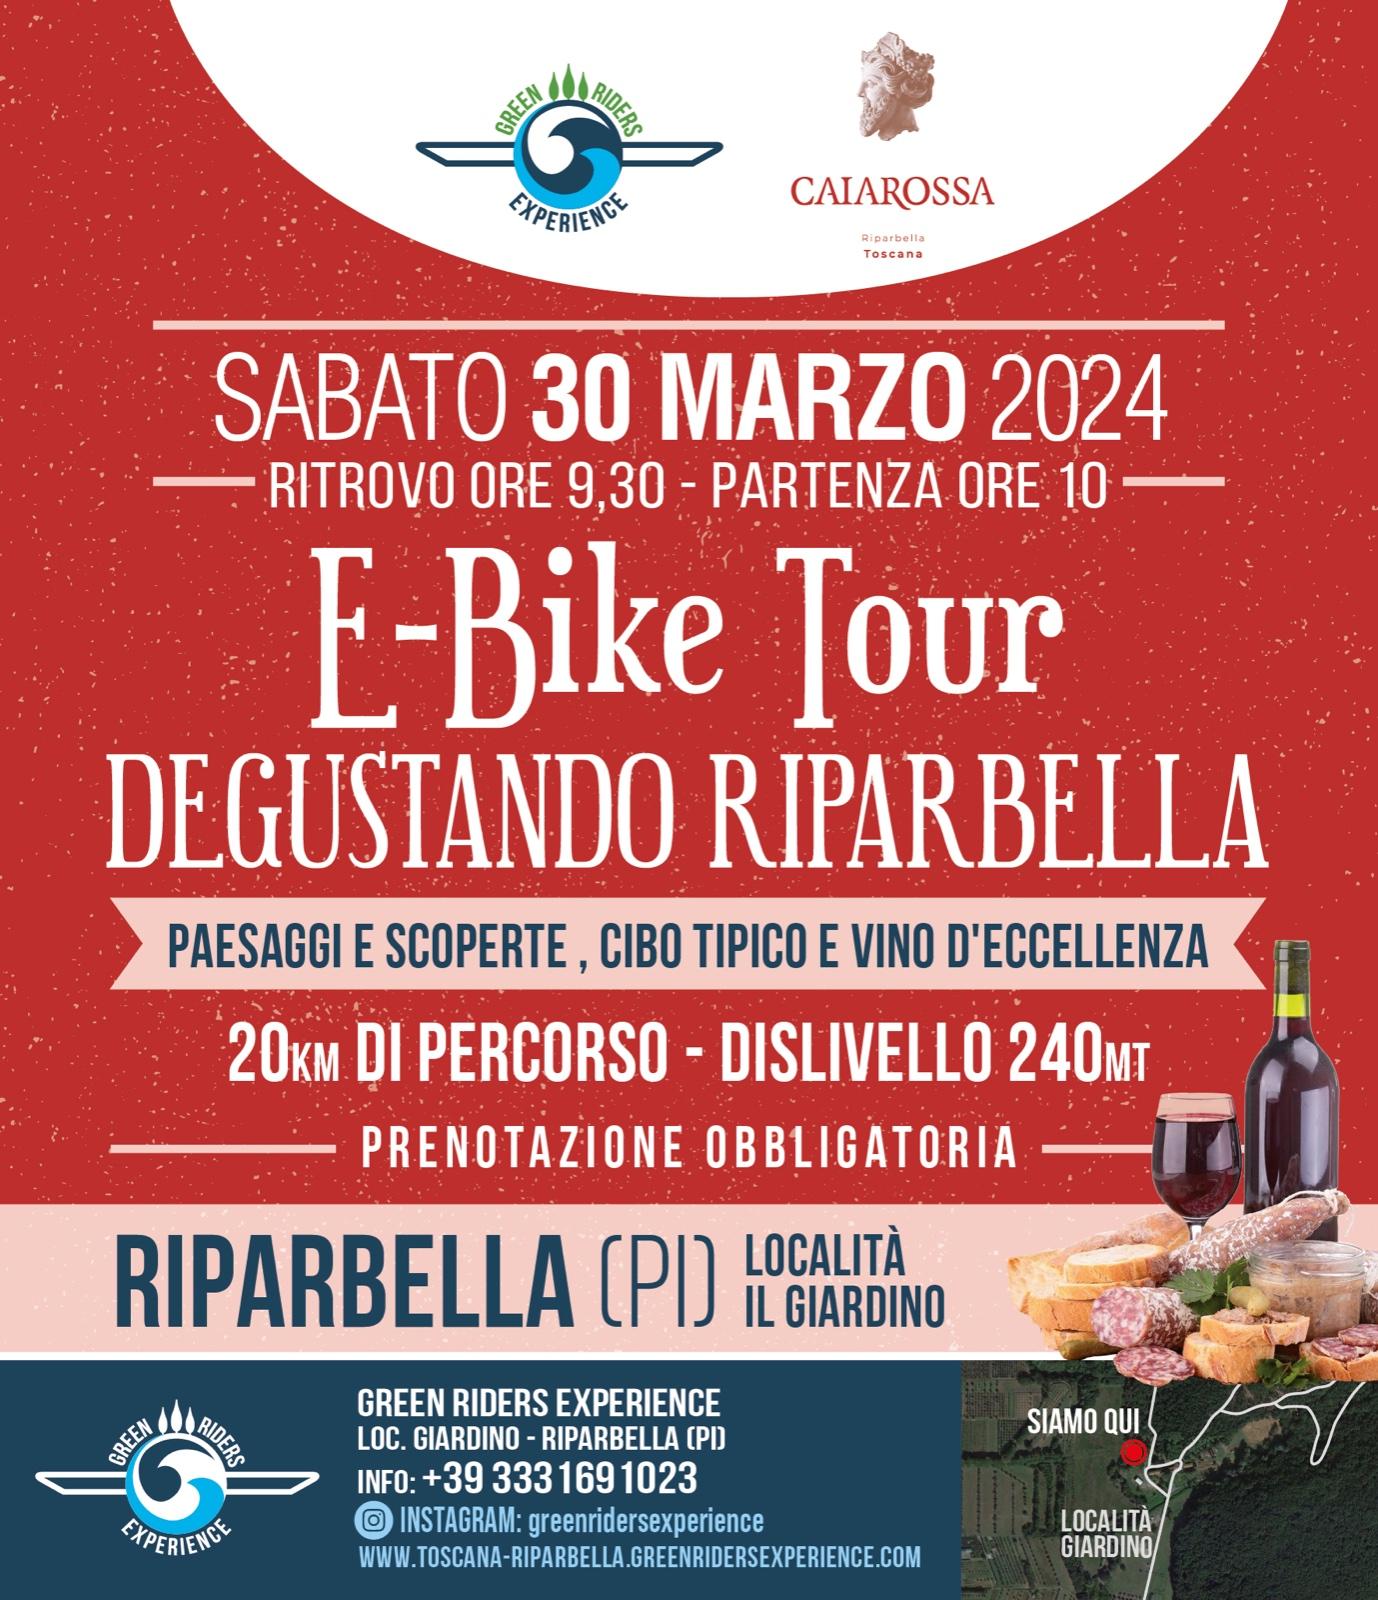 E-bike tour Degustando riaprbella 30 Marzo tour con E-bike